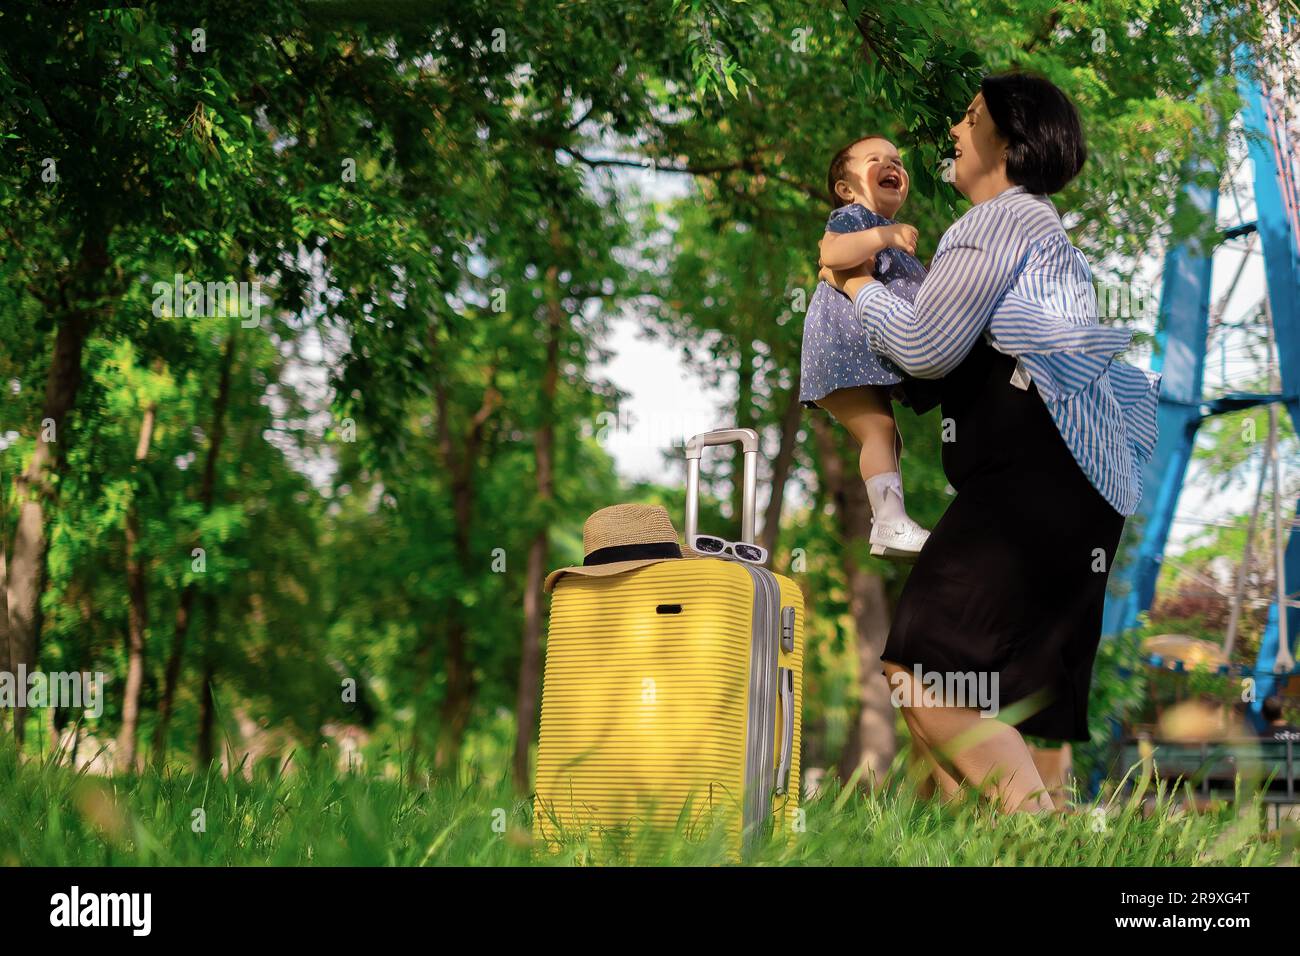 Mom und Tochter bereiten sich auf die Reise vor. Ein kleines Mädchen sitzt auf einem gelben Koffer. Geh auf eine Reise, entspann dich auf See, sammle Semodans im Urlaub Stockfoto